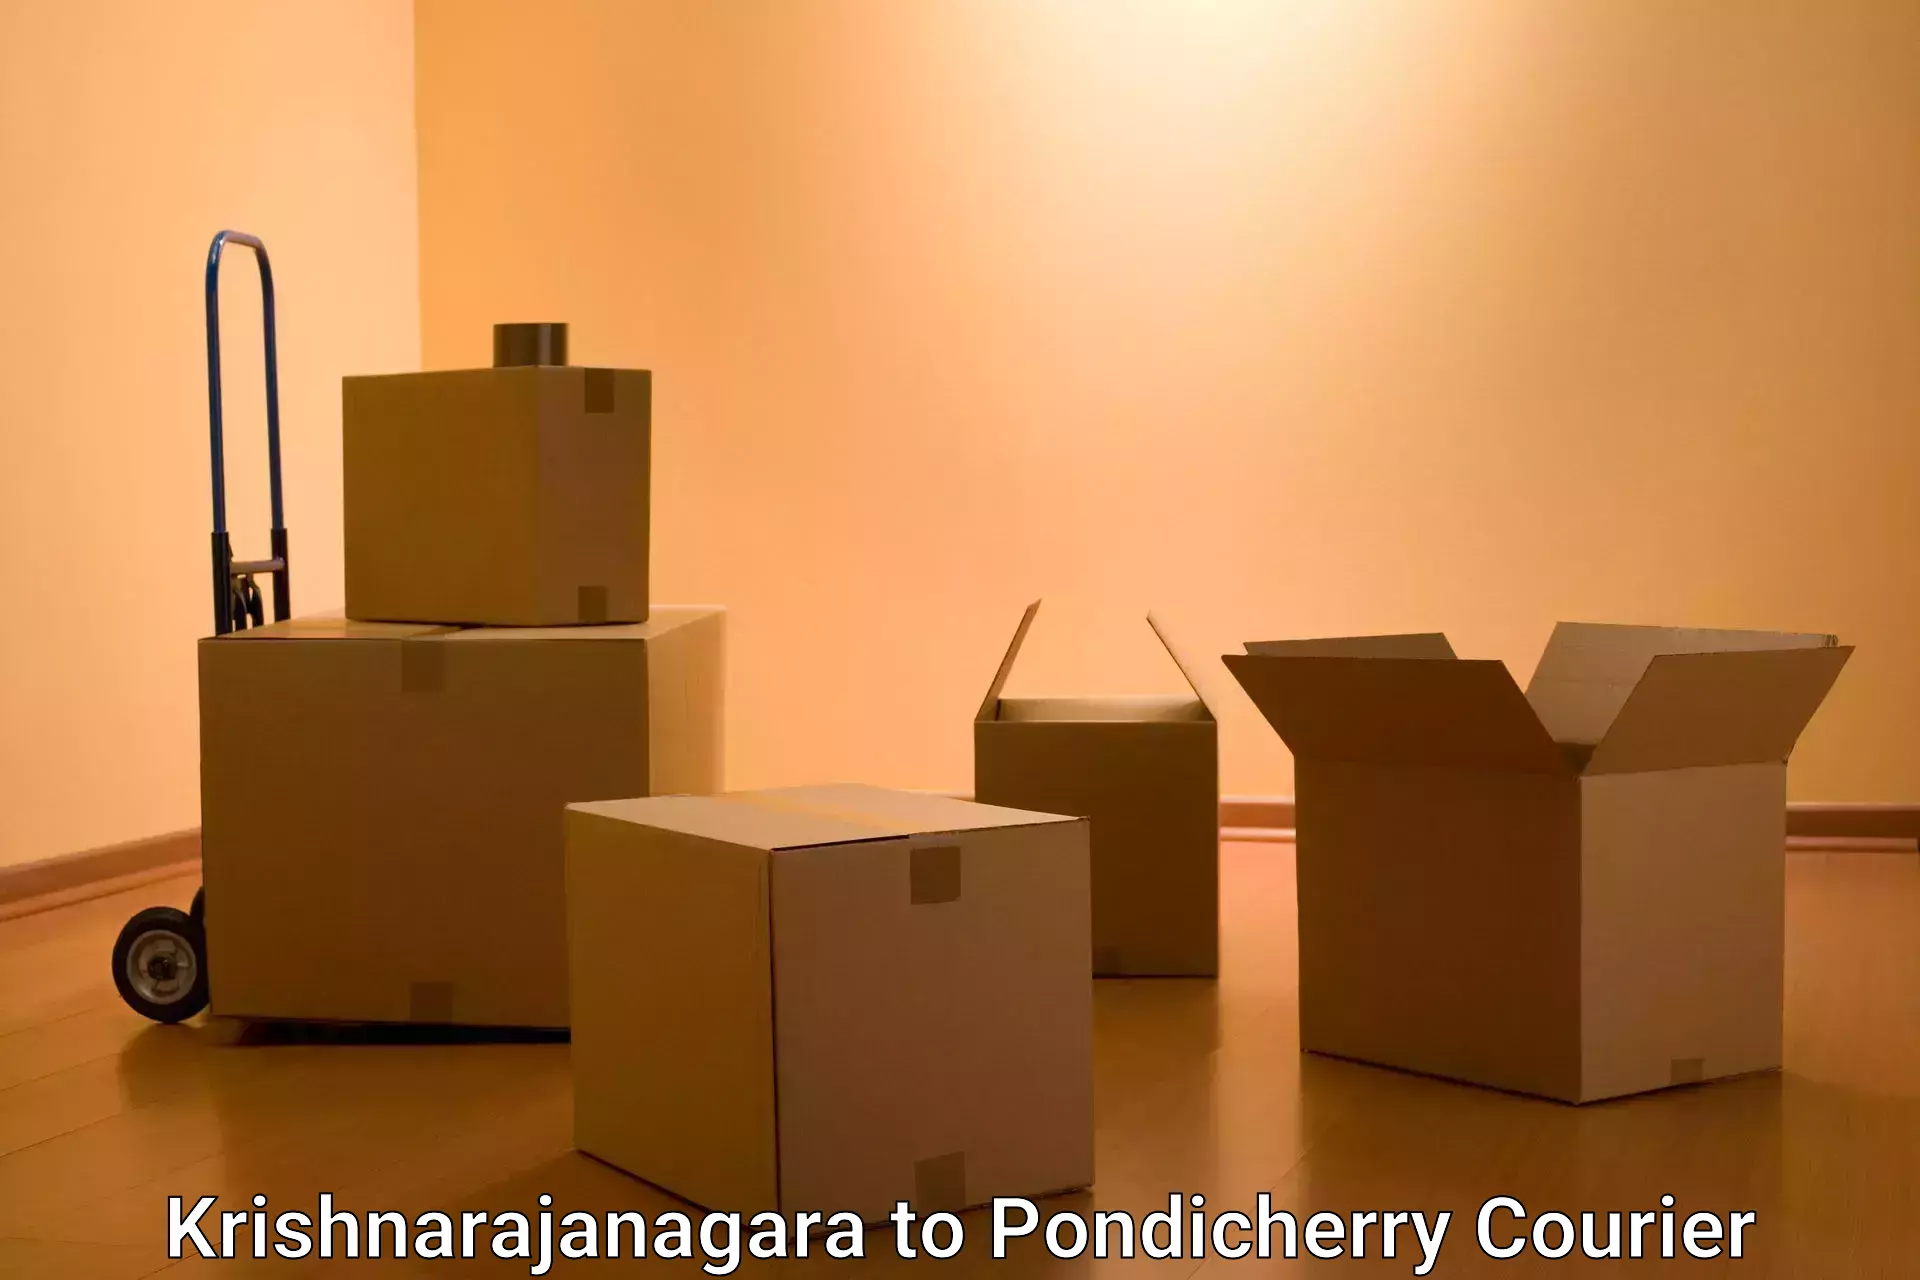 Nationwide parcel services Krishnarajanagara to Pondicherry